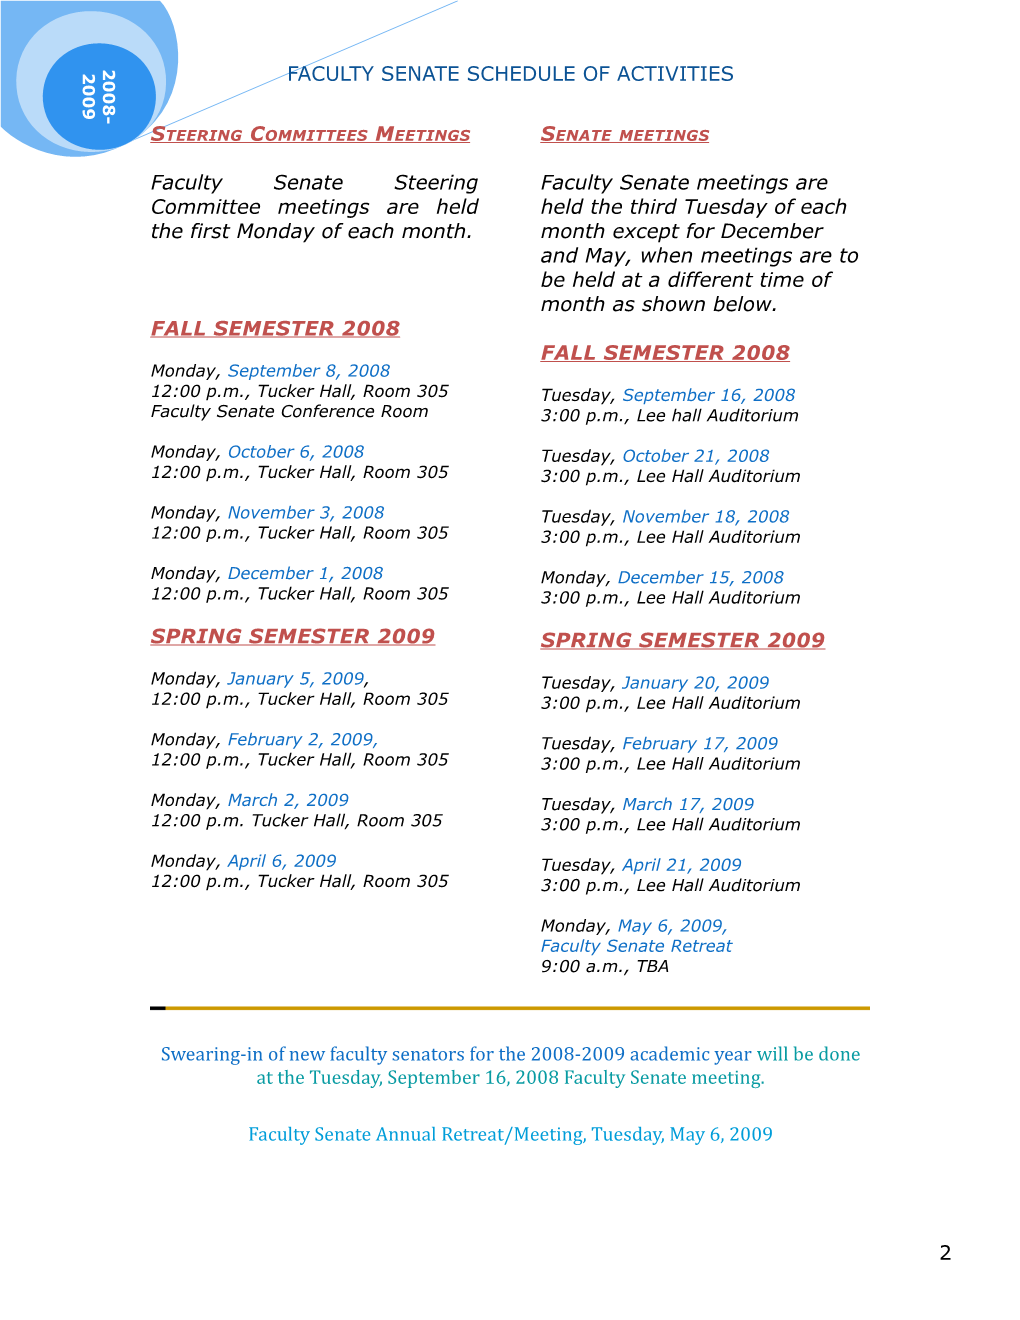 Faculty Senate Schedule of Activities